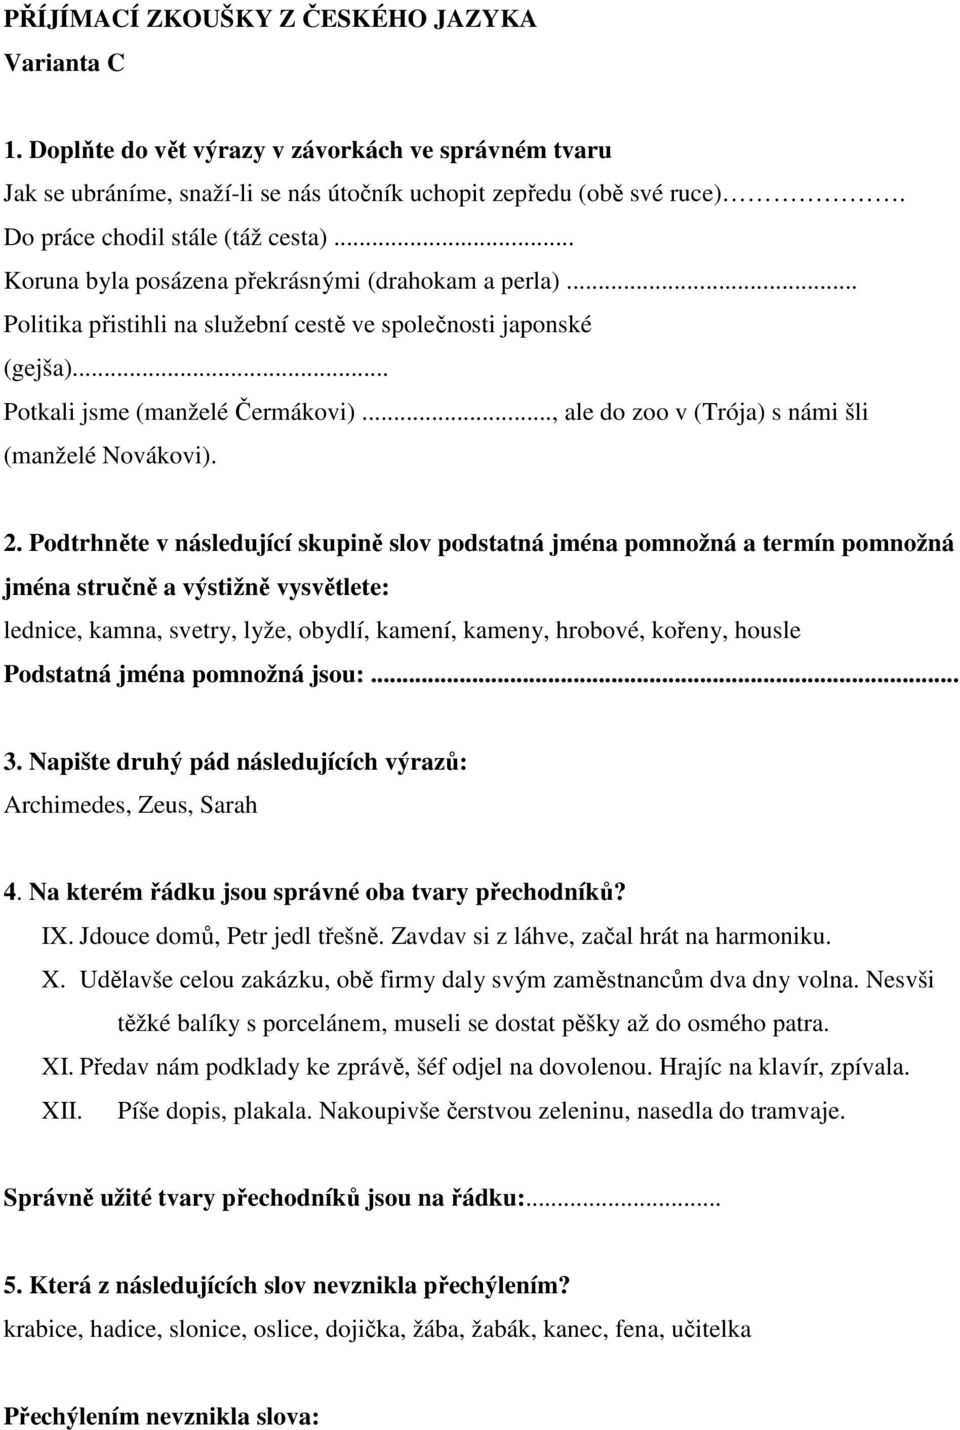 PŘIJÍMACÍ ZKOUŠKY Z ČESKÉHO JAZYKA Varianta A - PDF Stažení zdarma